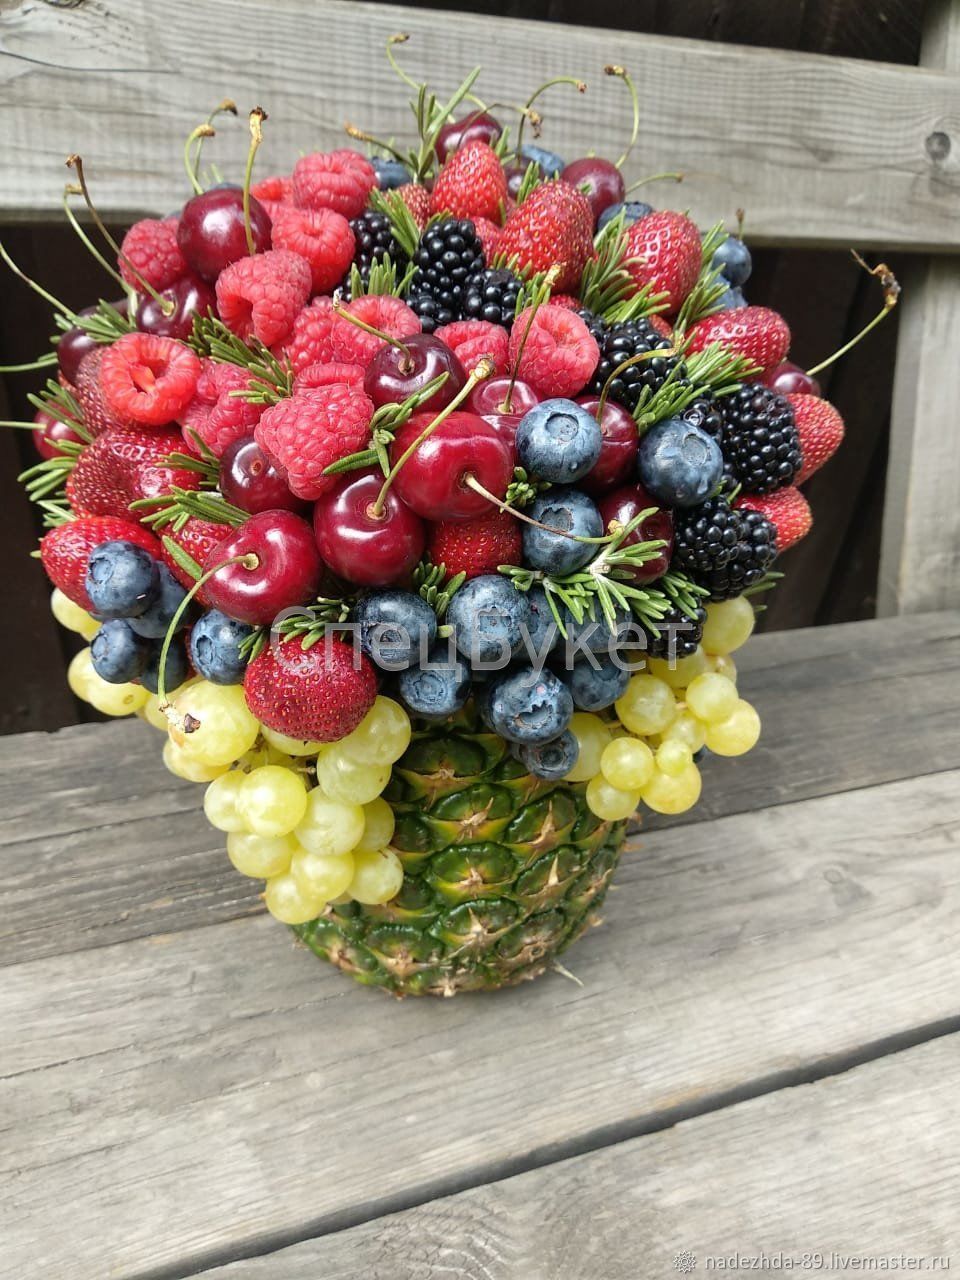 Как сделать букет из фруктов, цветов и ягод: мастер-класс по изготовлению букета своими руками